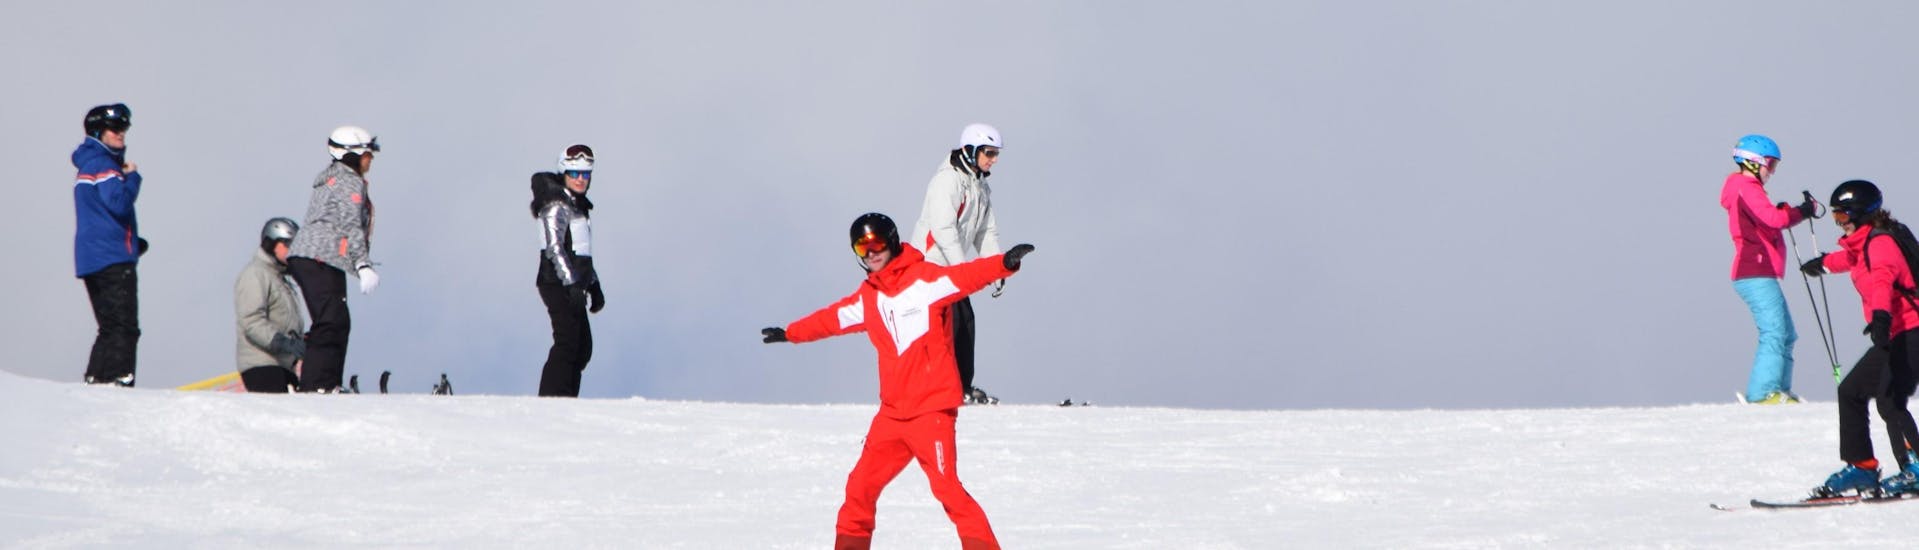 Cours de ski Adultes dès 15 ans - Avancé avec Ski School Snowsports Westendorf.